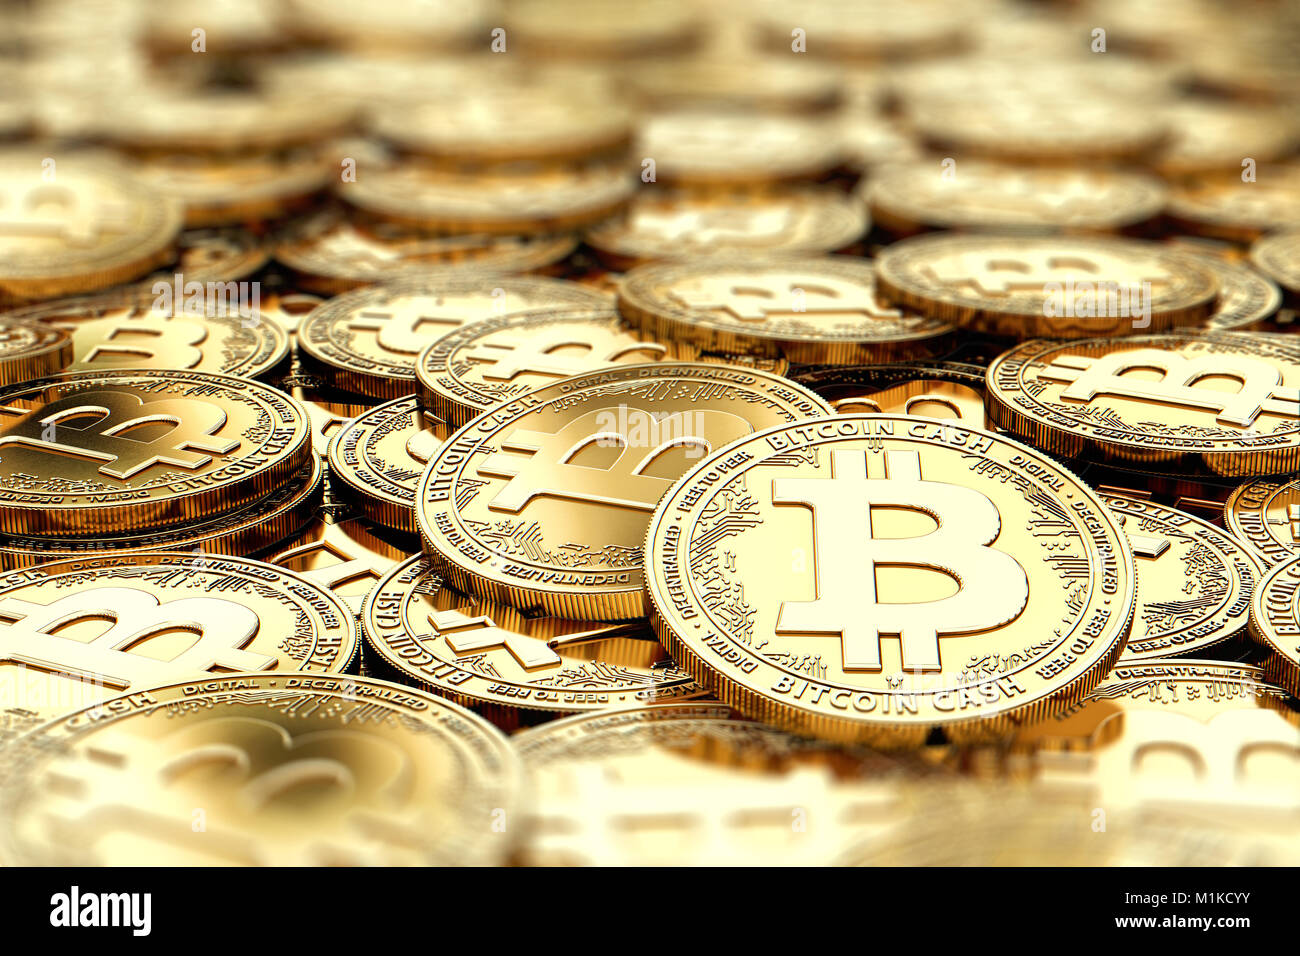 Pila de monedas de oro efectivo Bitcoin CCO en primer plano borroso, con copia espacio encima en la zona borrosa. 3D rendering Foto de stock